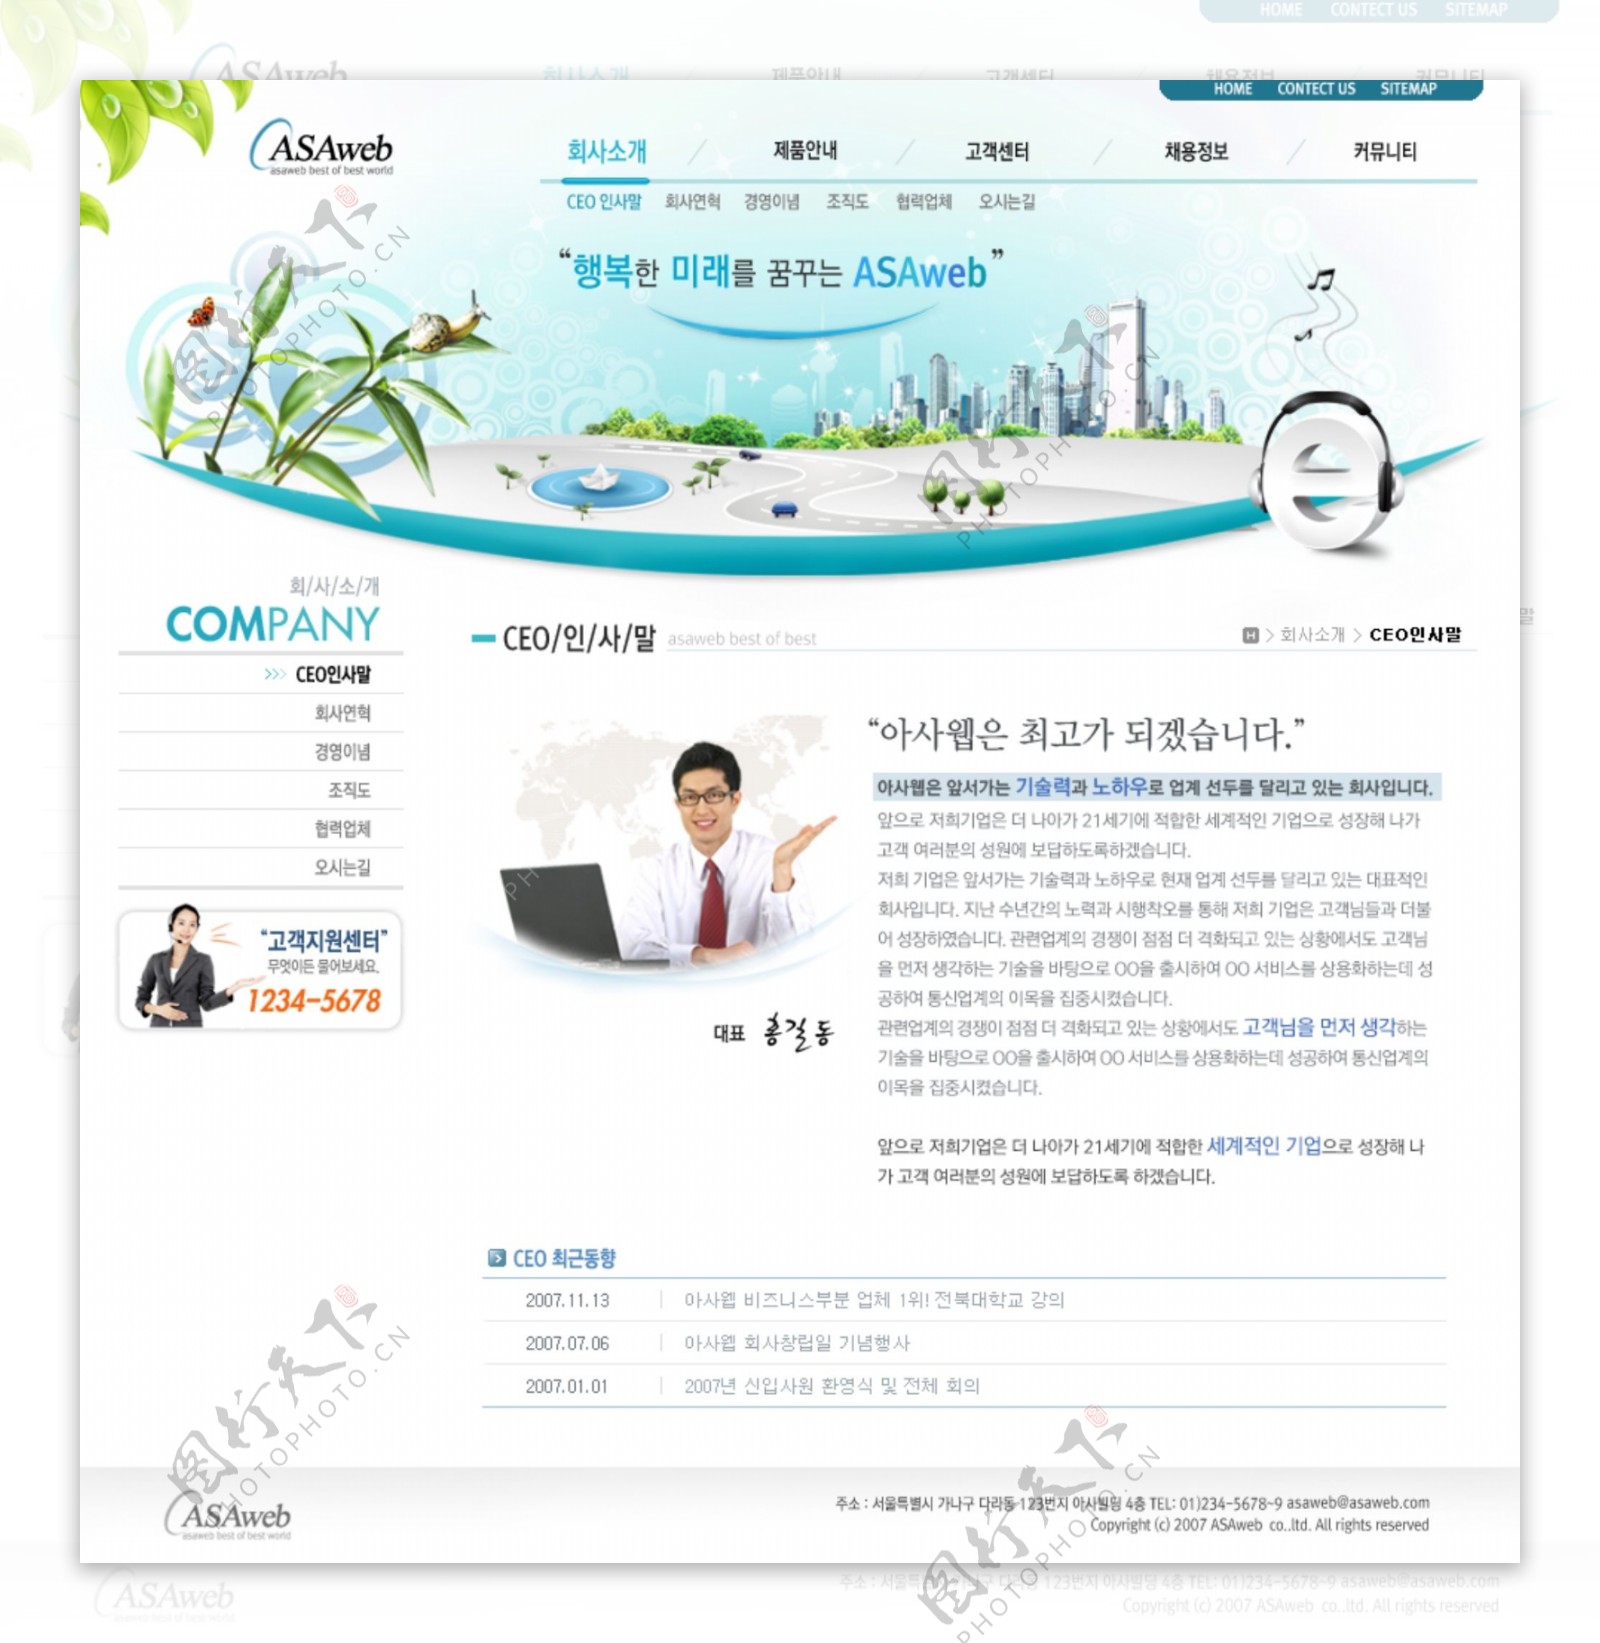 广告商贸网页模版图片